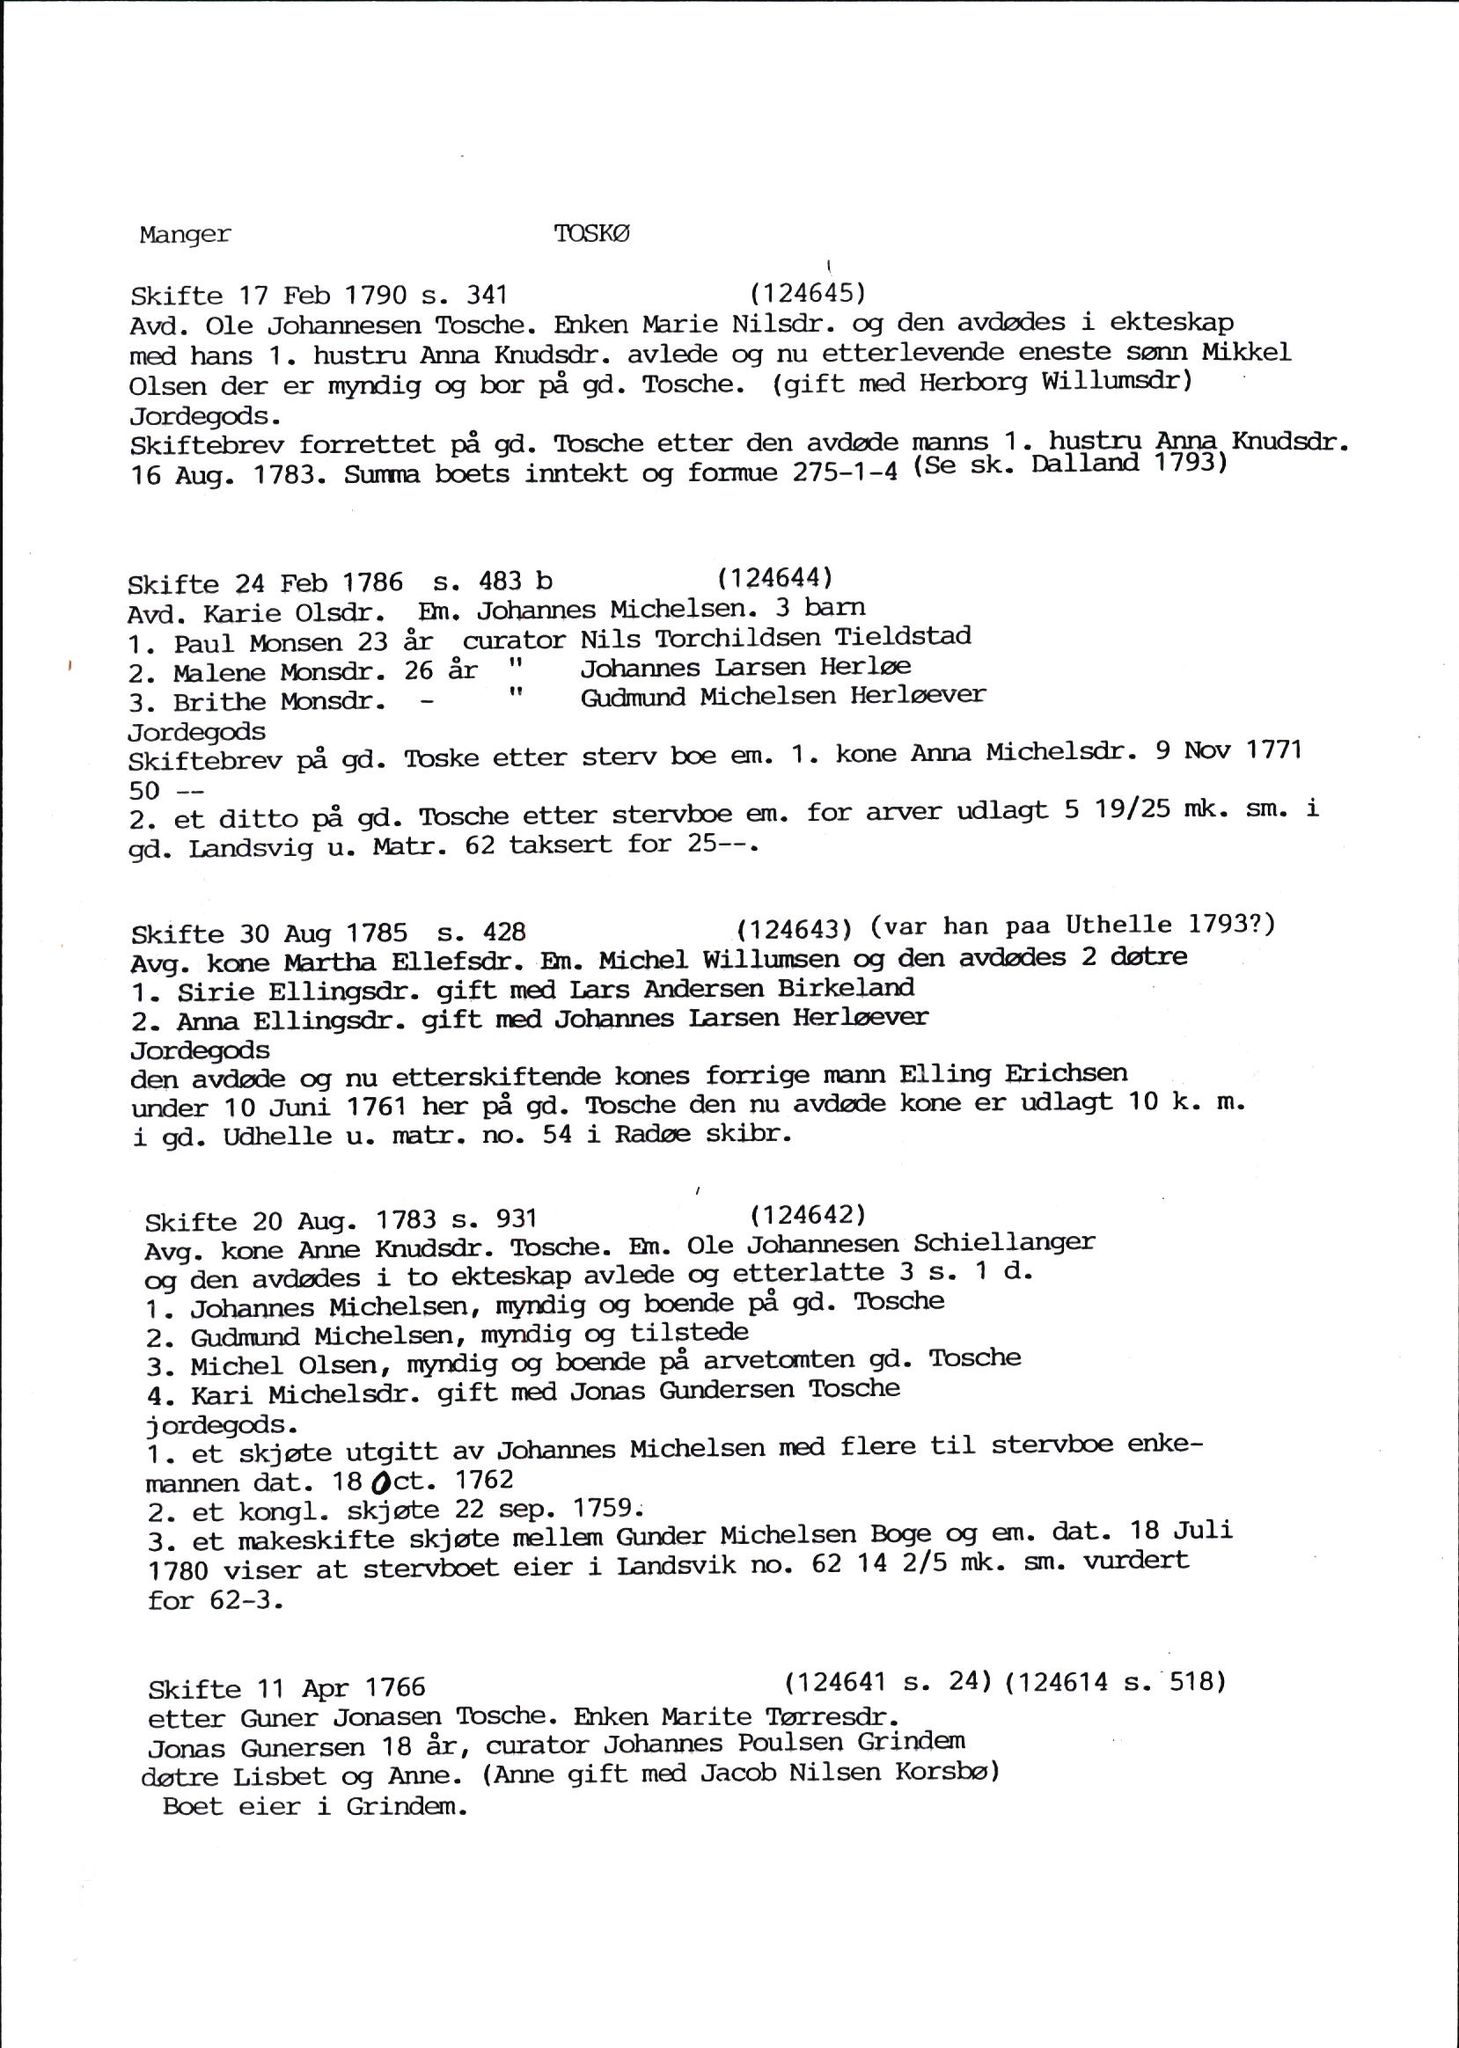 Samling av fulltekstavskrifter, SAB/FULLTEKST/D/12/0001: Skifter og andre opplysninger fra gårder i Manger prestegjeld (soknene Herdla, Bø, Sæbø og Manger) ca. 1700 - ca. 1800, 1700-1800, s. 56